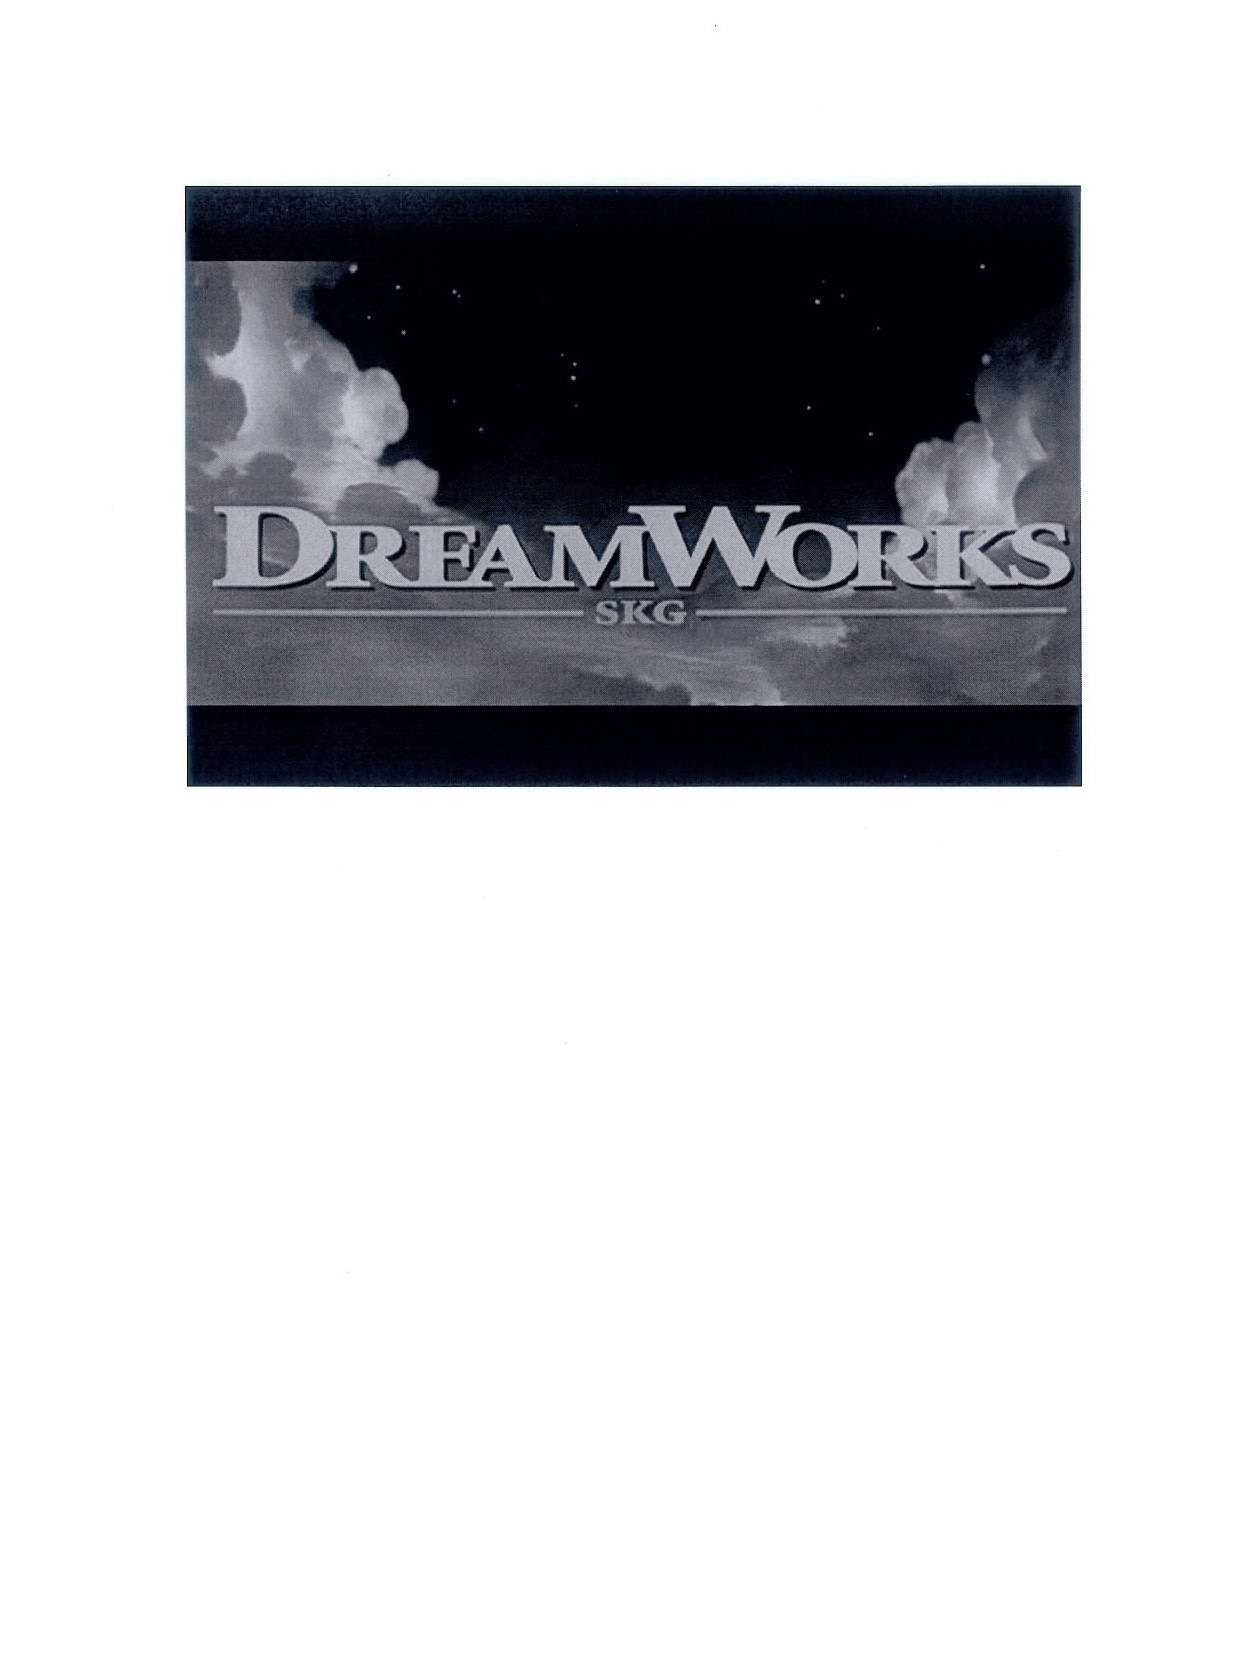 Dreamworks Skg Dreamworks Animation L L C Trademark Registration